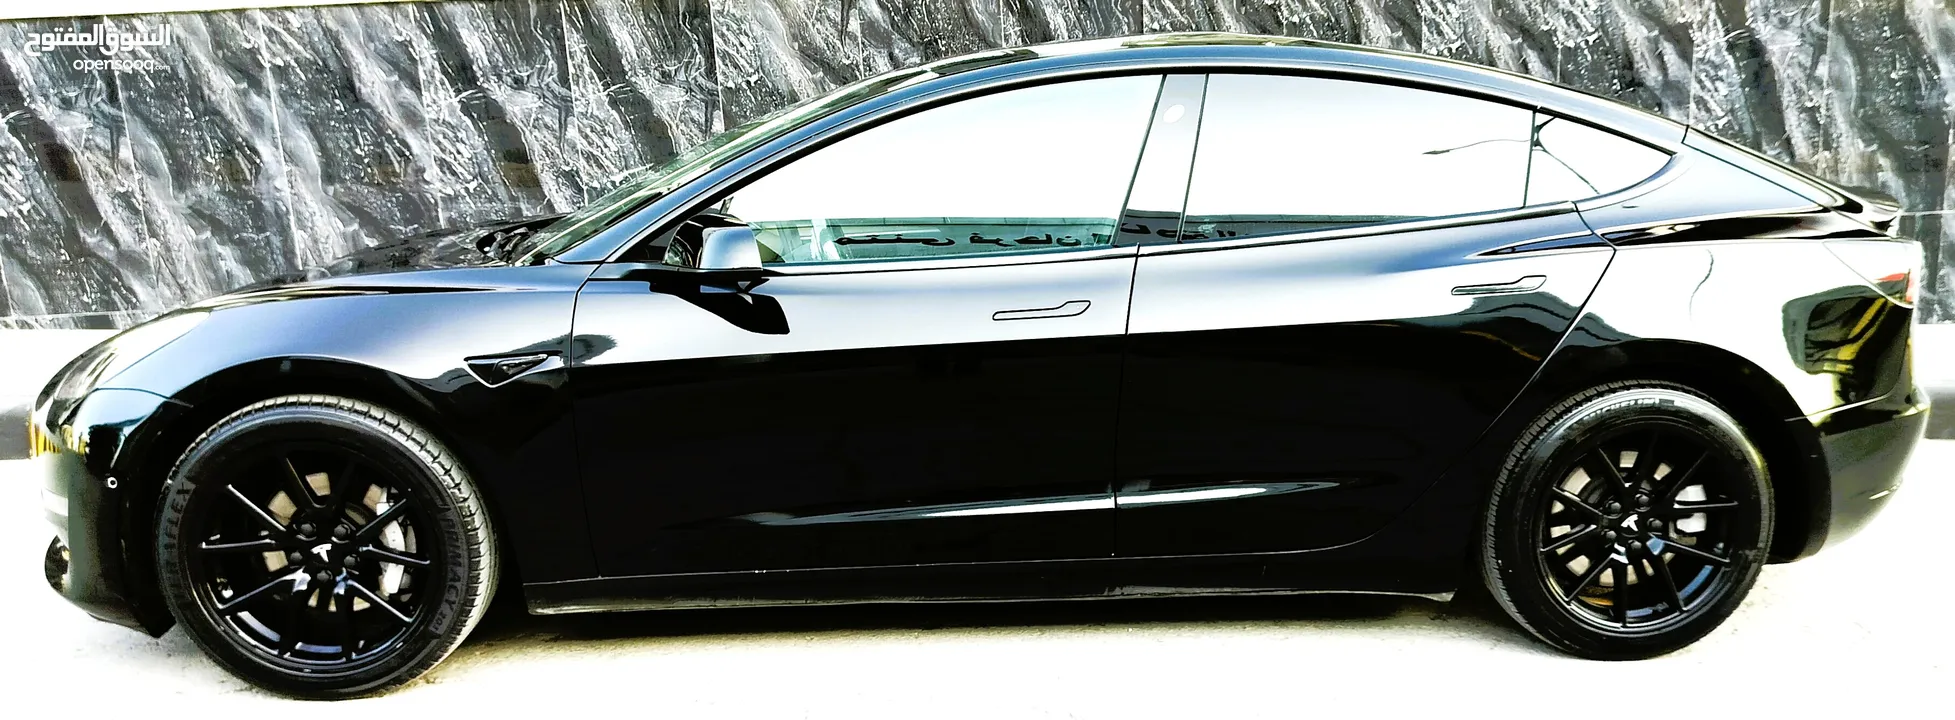 تيسلا 2021 model 3 فحص كامل 7 جيد لون مميز اسود ملوكي بحالة الوكالة للبيع بسعر لقطة ومحروووق